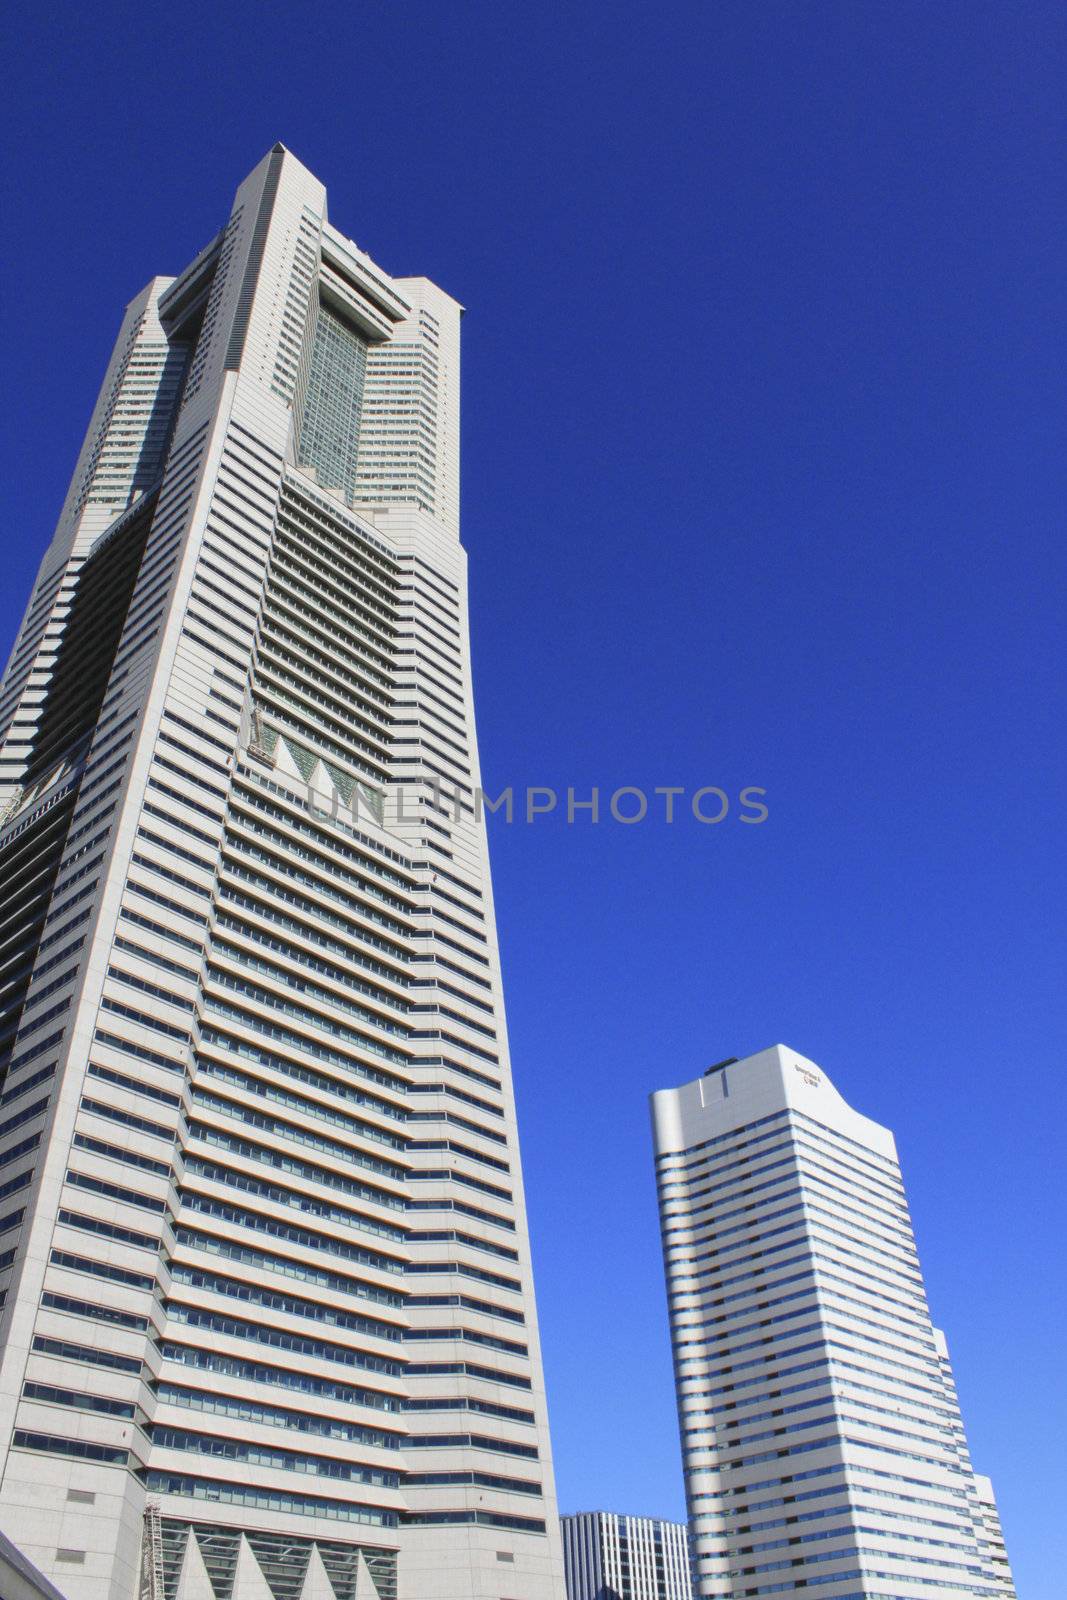 high building in yokohama,japan